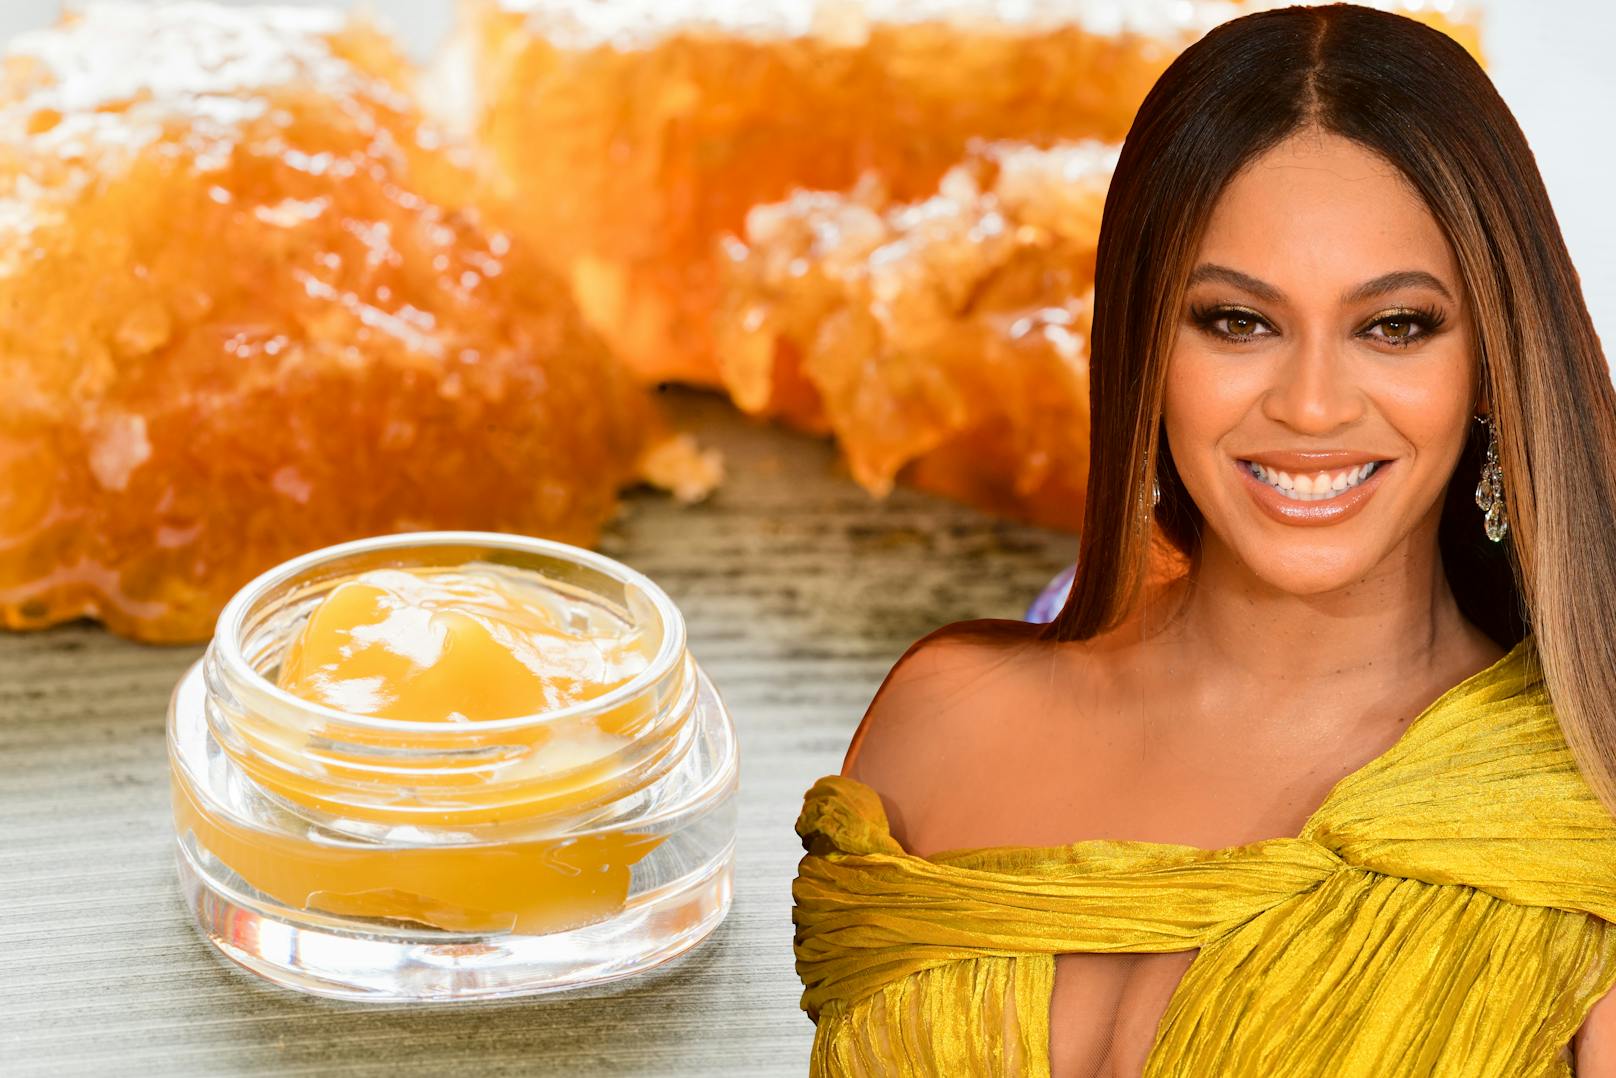 Selbst Bienenzüchterin schwört Popstar Beyoncé auf die Wirkung des Honigs.